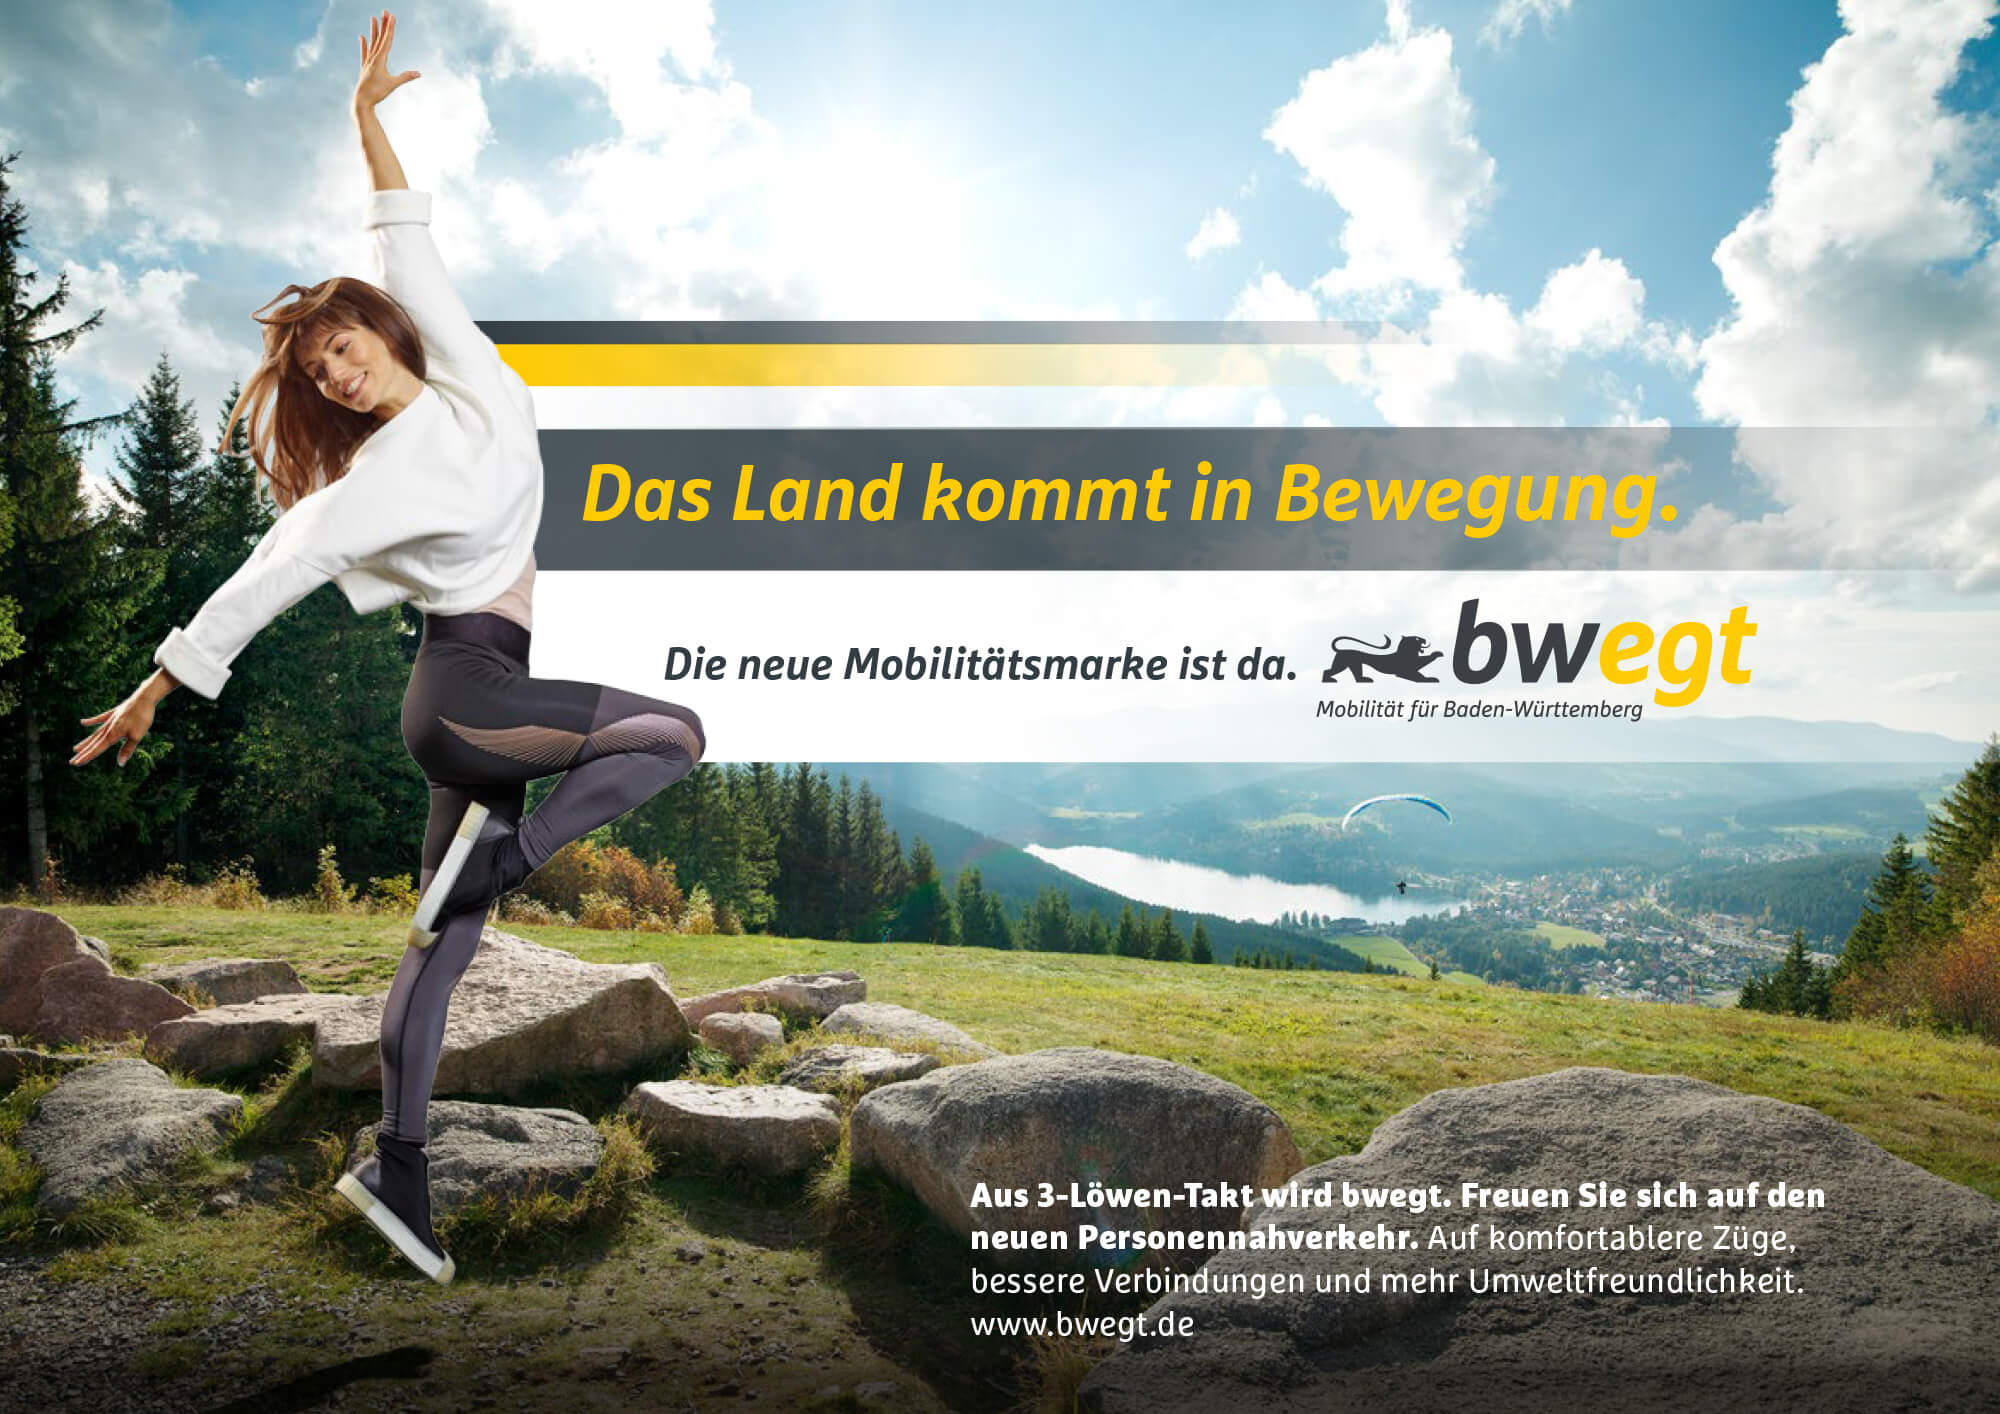 image: S'bwegt' Mobilität für Baden-Württemberg